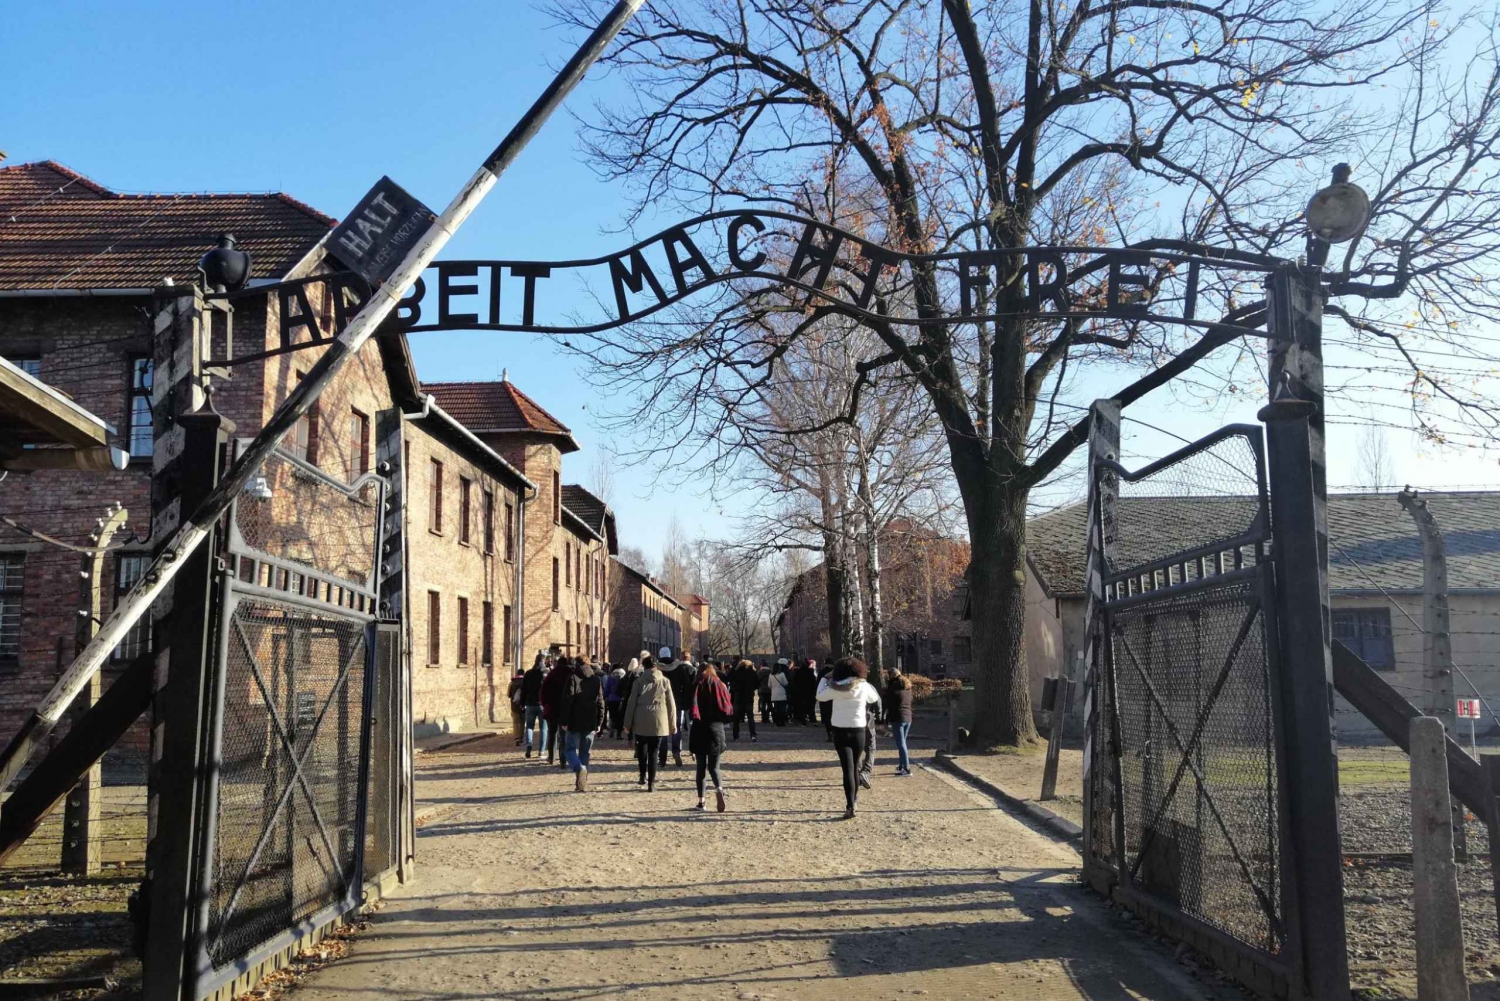 Varsovia: Excursión a Cracovia y Auschwitz en tren con servicio de recogida